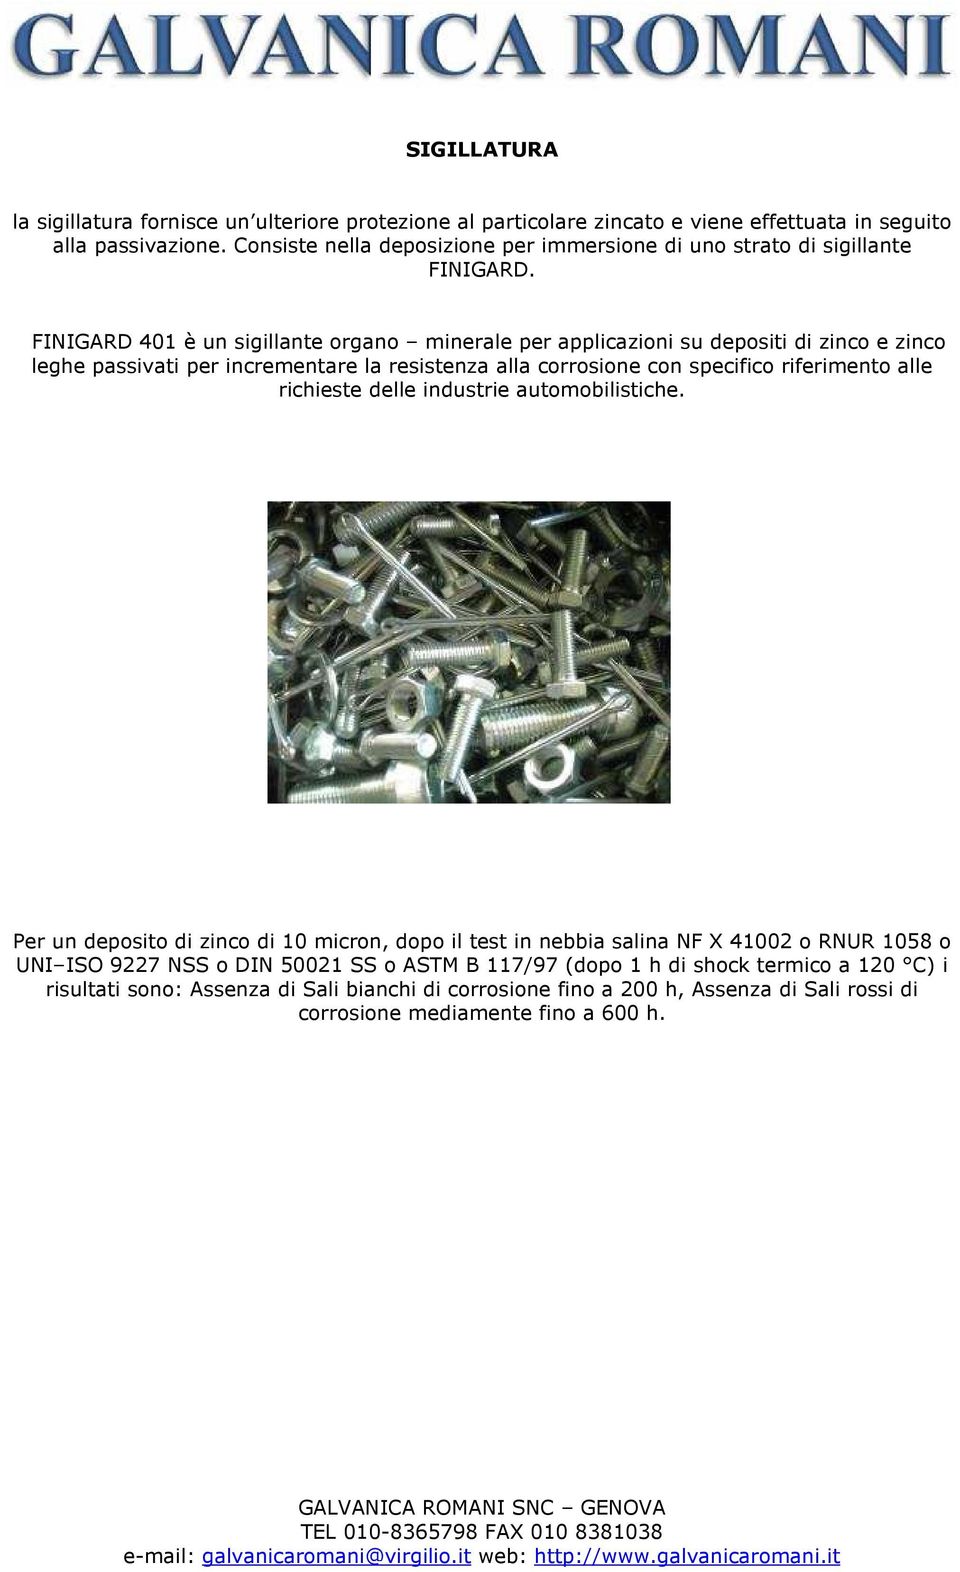 FINIGARD 401 è un sigillante organo minerale per applicazioni su depositi di zinco e zinco leghe passivati per incrementare la resistenza alla corrosione con specifico riferimento alle